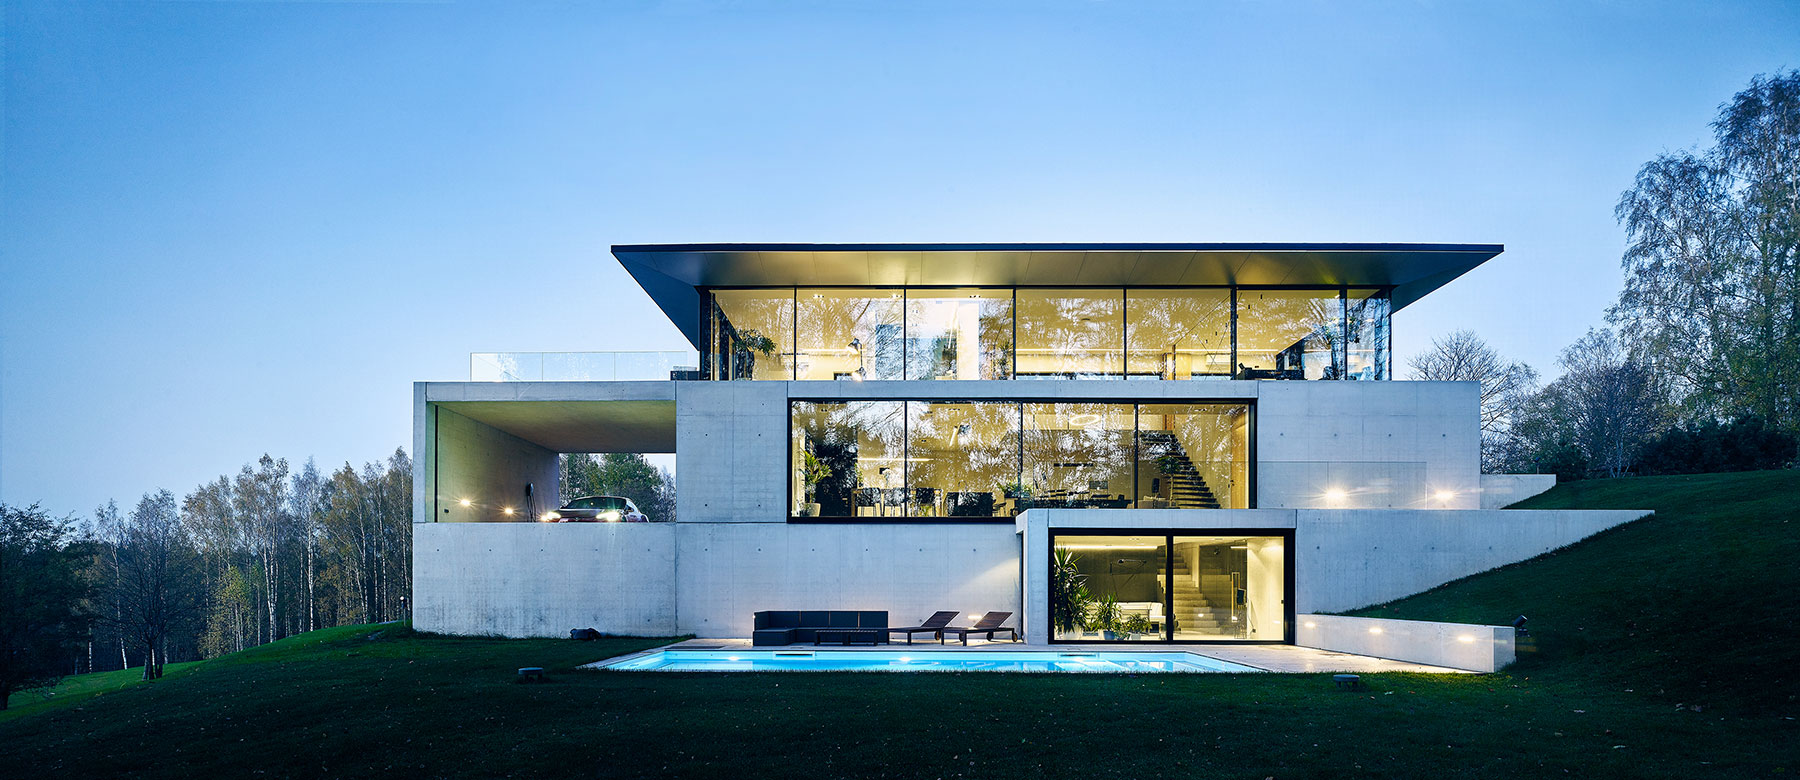 Architekti studia OUTOFBOX tomu říkají "asketický design". Impozantní budova ze skla a betonu organicky zapadá do terasovitého terénu.